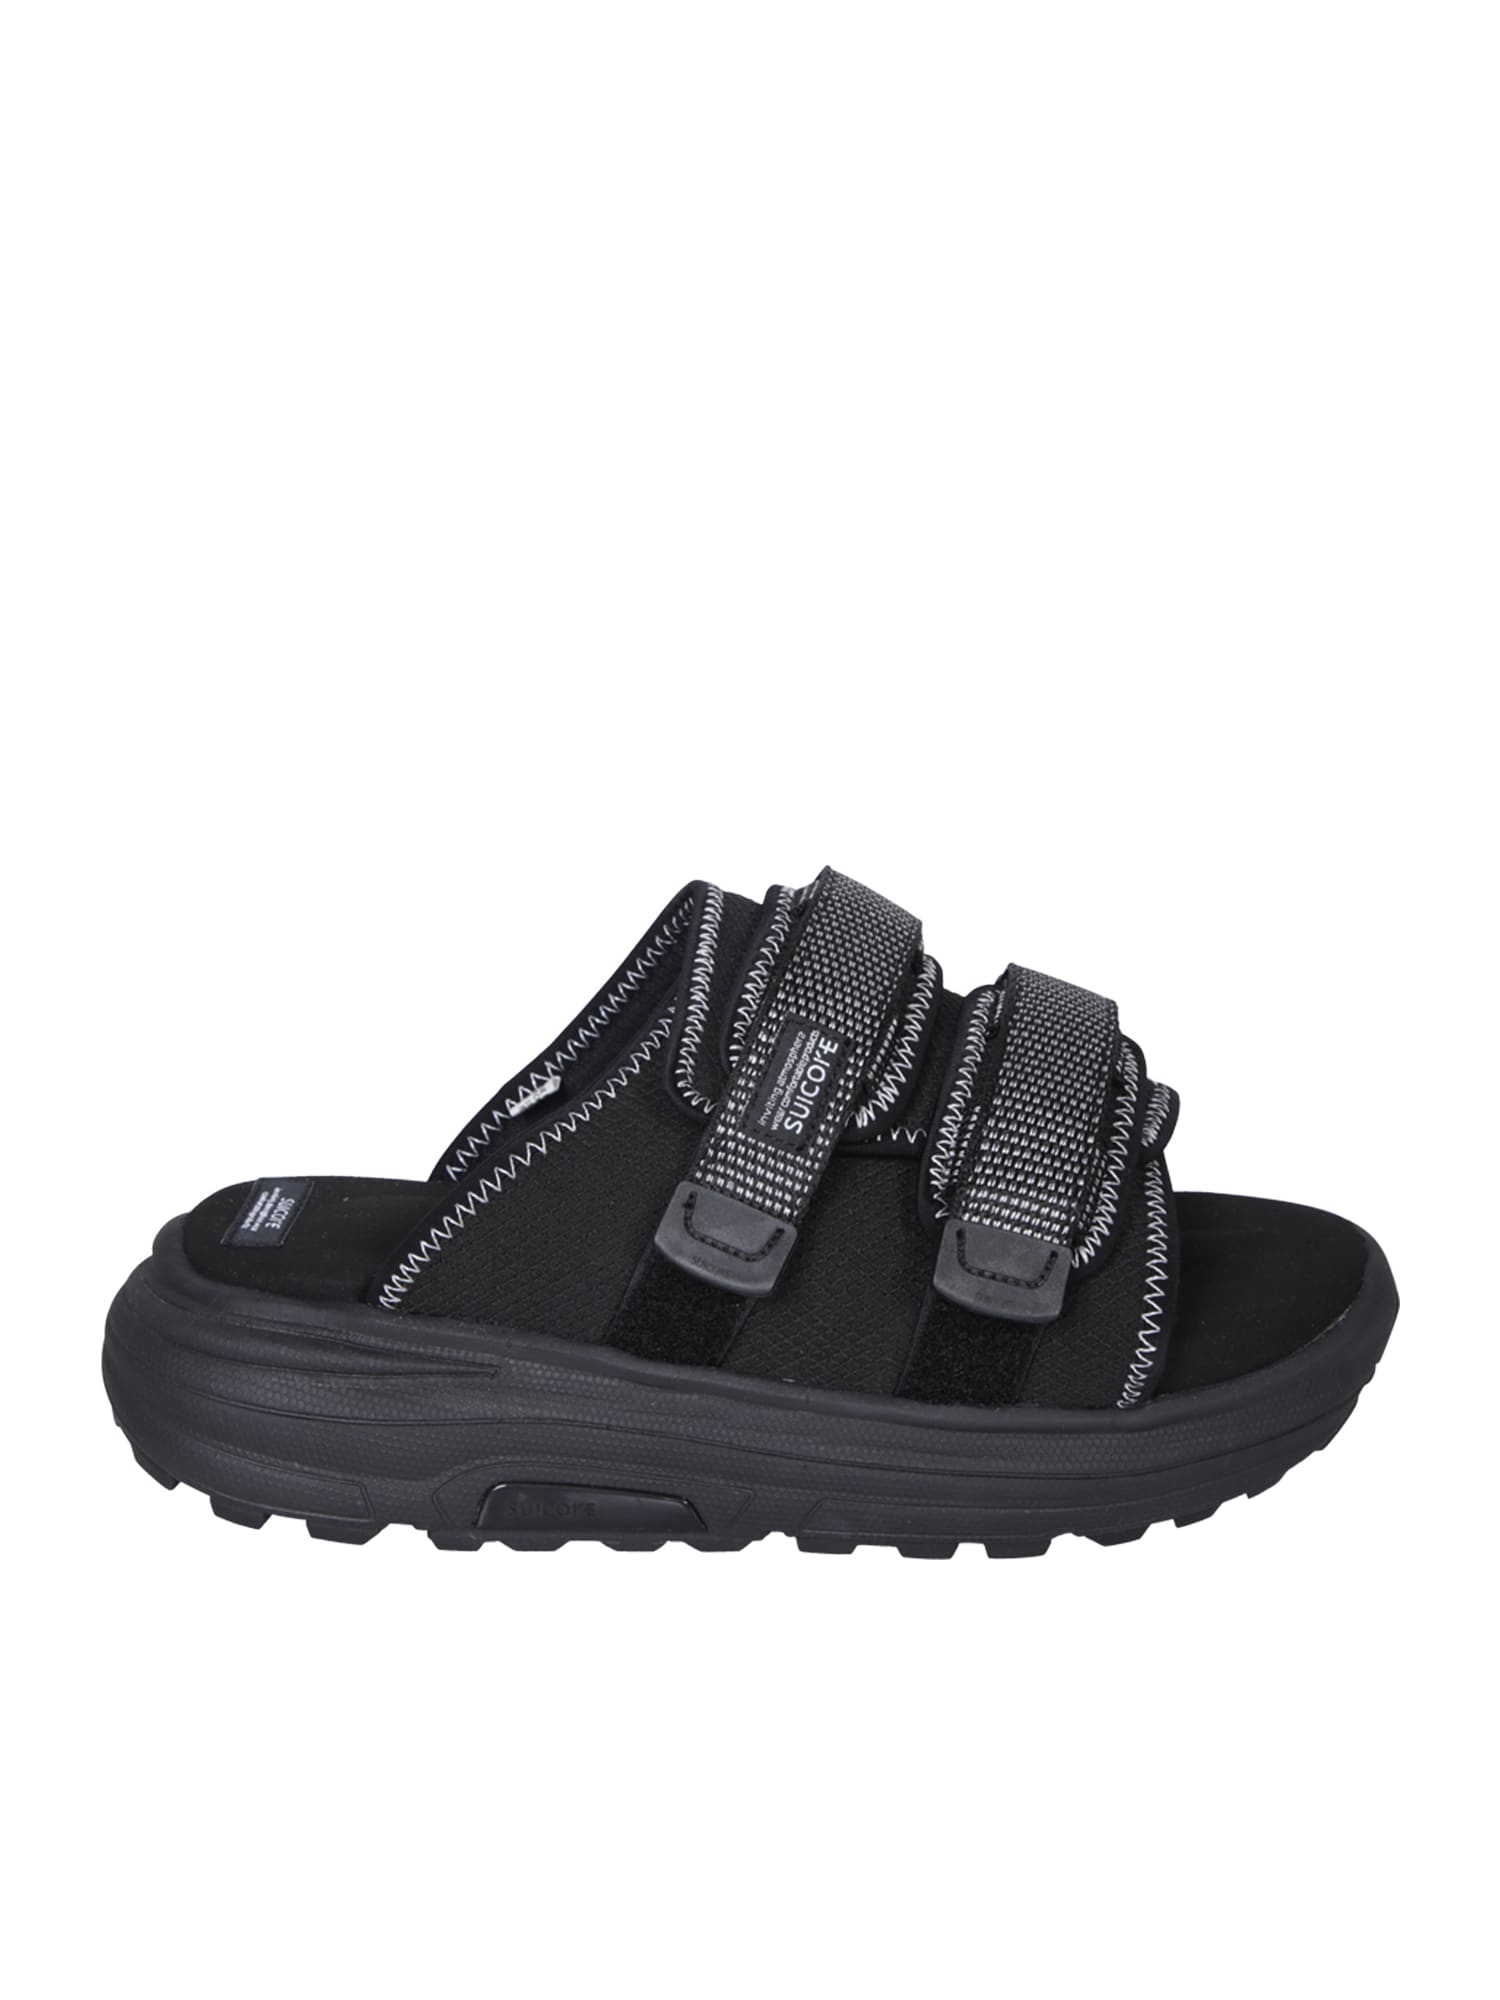 Shop Suicoke Moto Run 2 Black Sandals